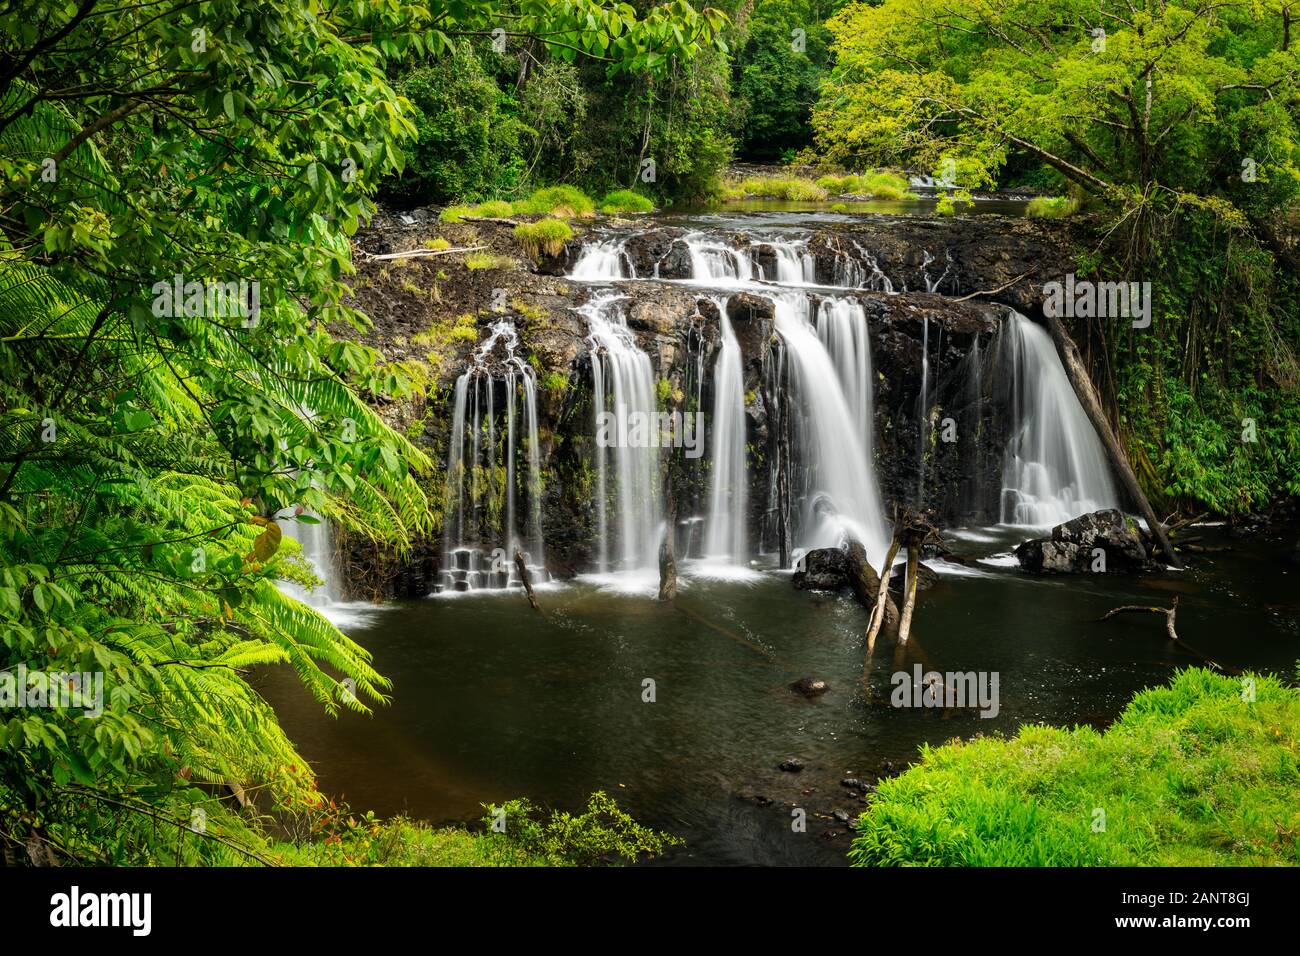 Wallicher Falls in the Wet Tropics of Queensland. Stock Photo